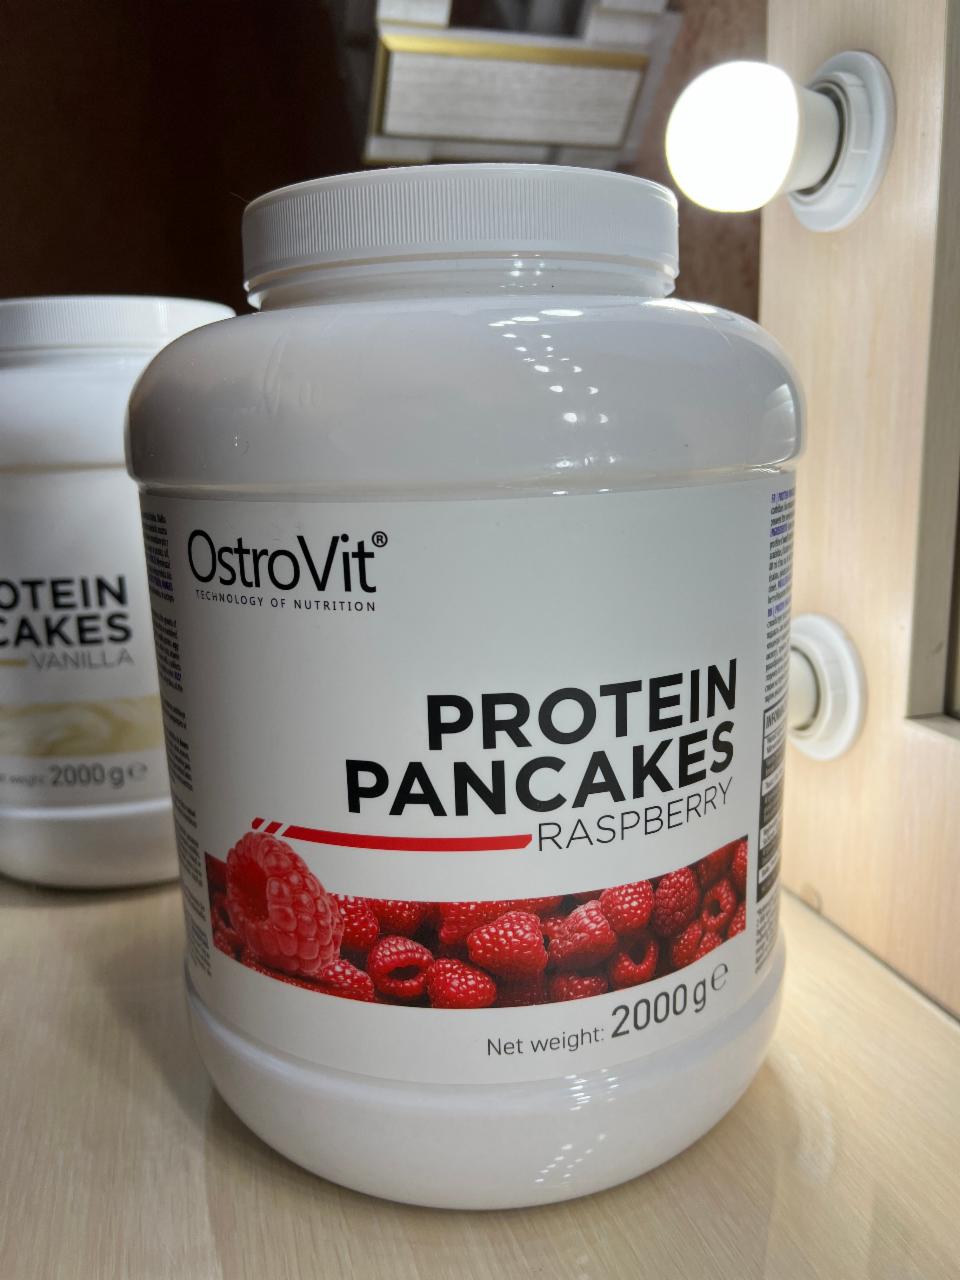 Фото - Protein Pancakes with taste-Raspberry Панкейк Протеиновые OstroVit